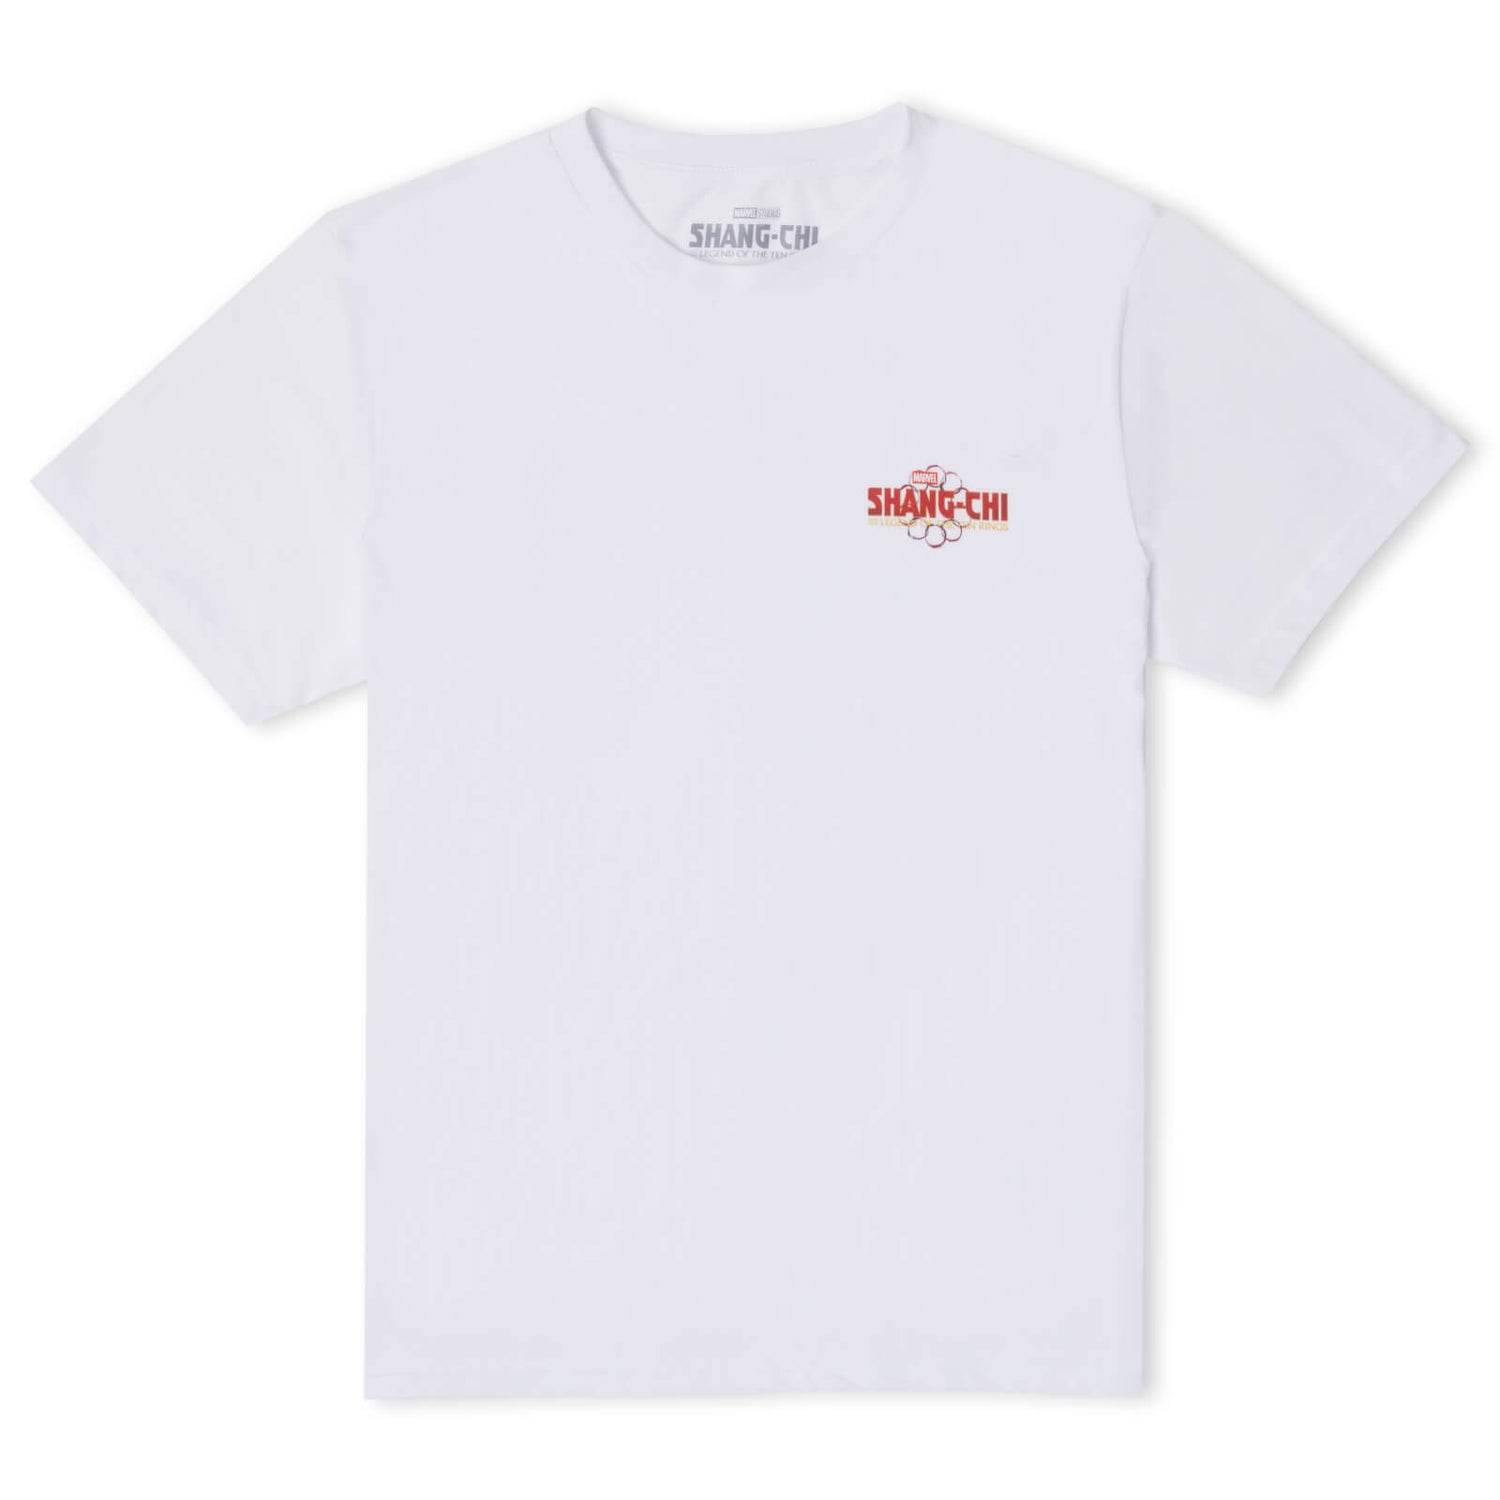 Shang-Chi Razorfist Women's T-Shirt - White